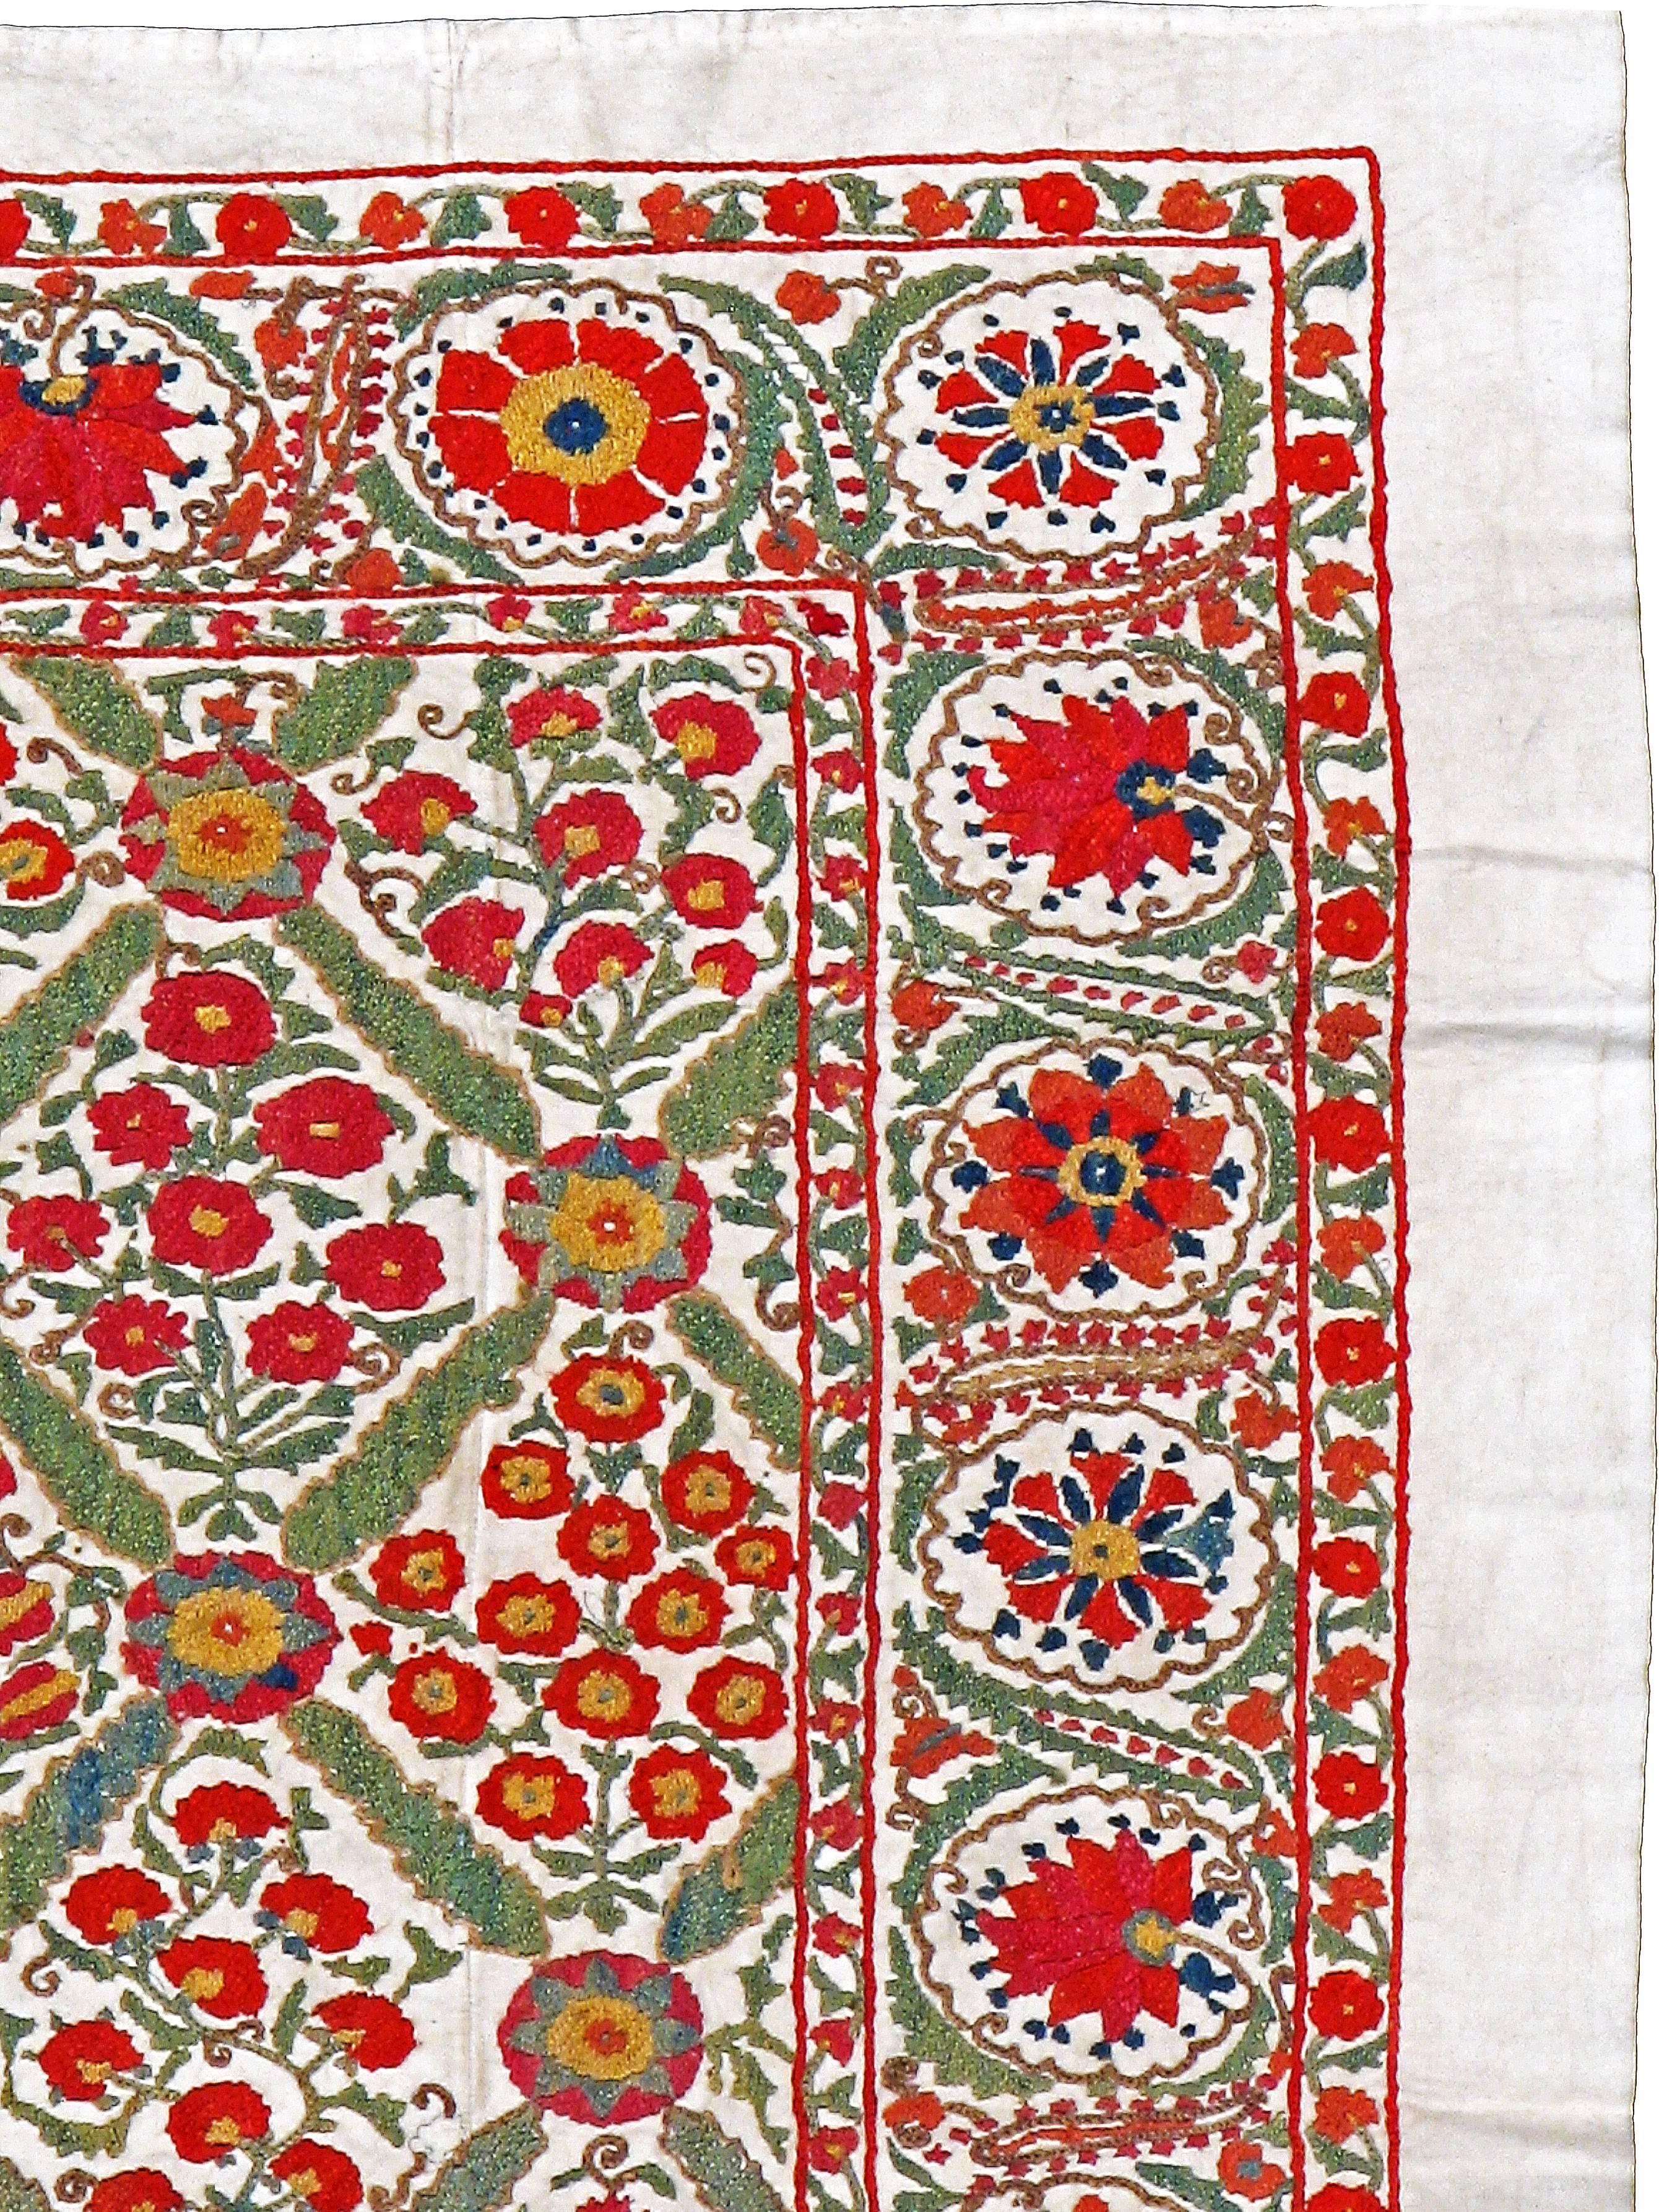 Un textile ouzbek Suzani (broderie) vintage du milieu du 20e siècle.